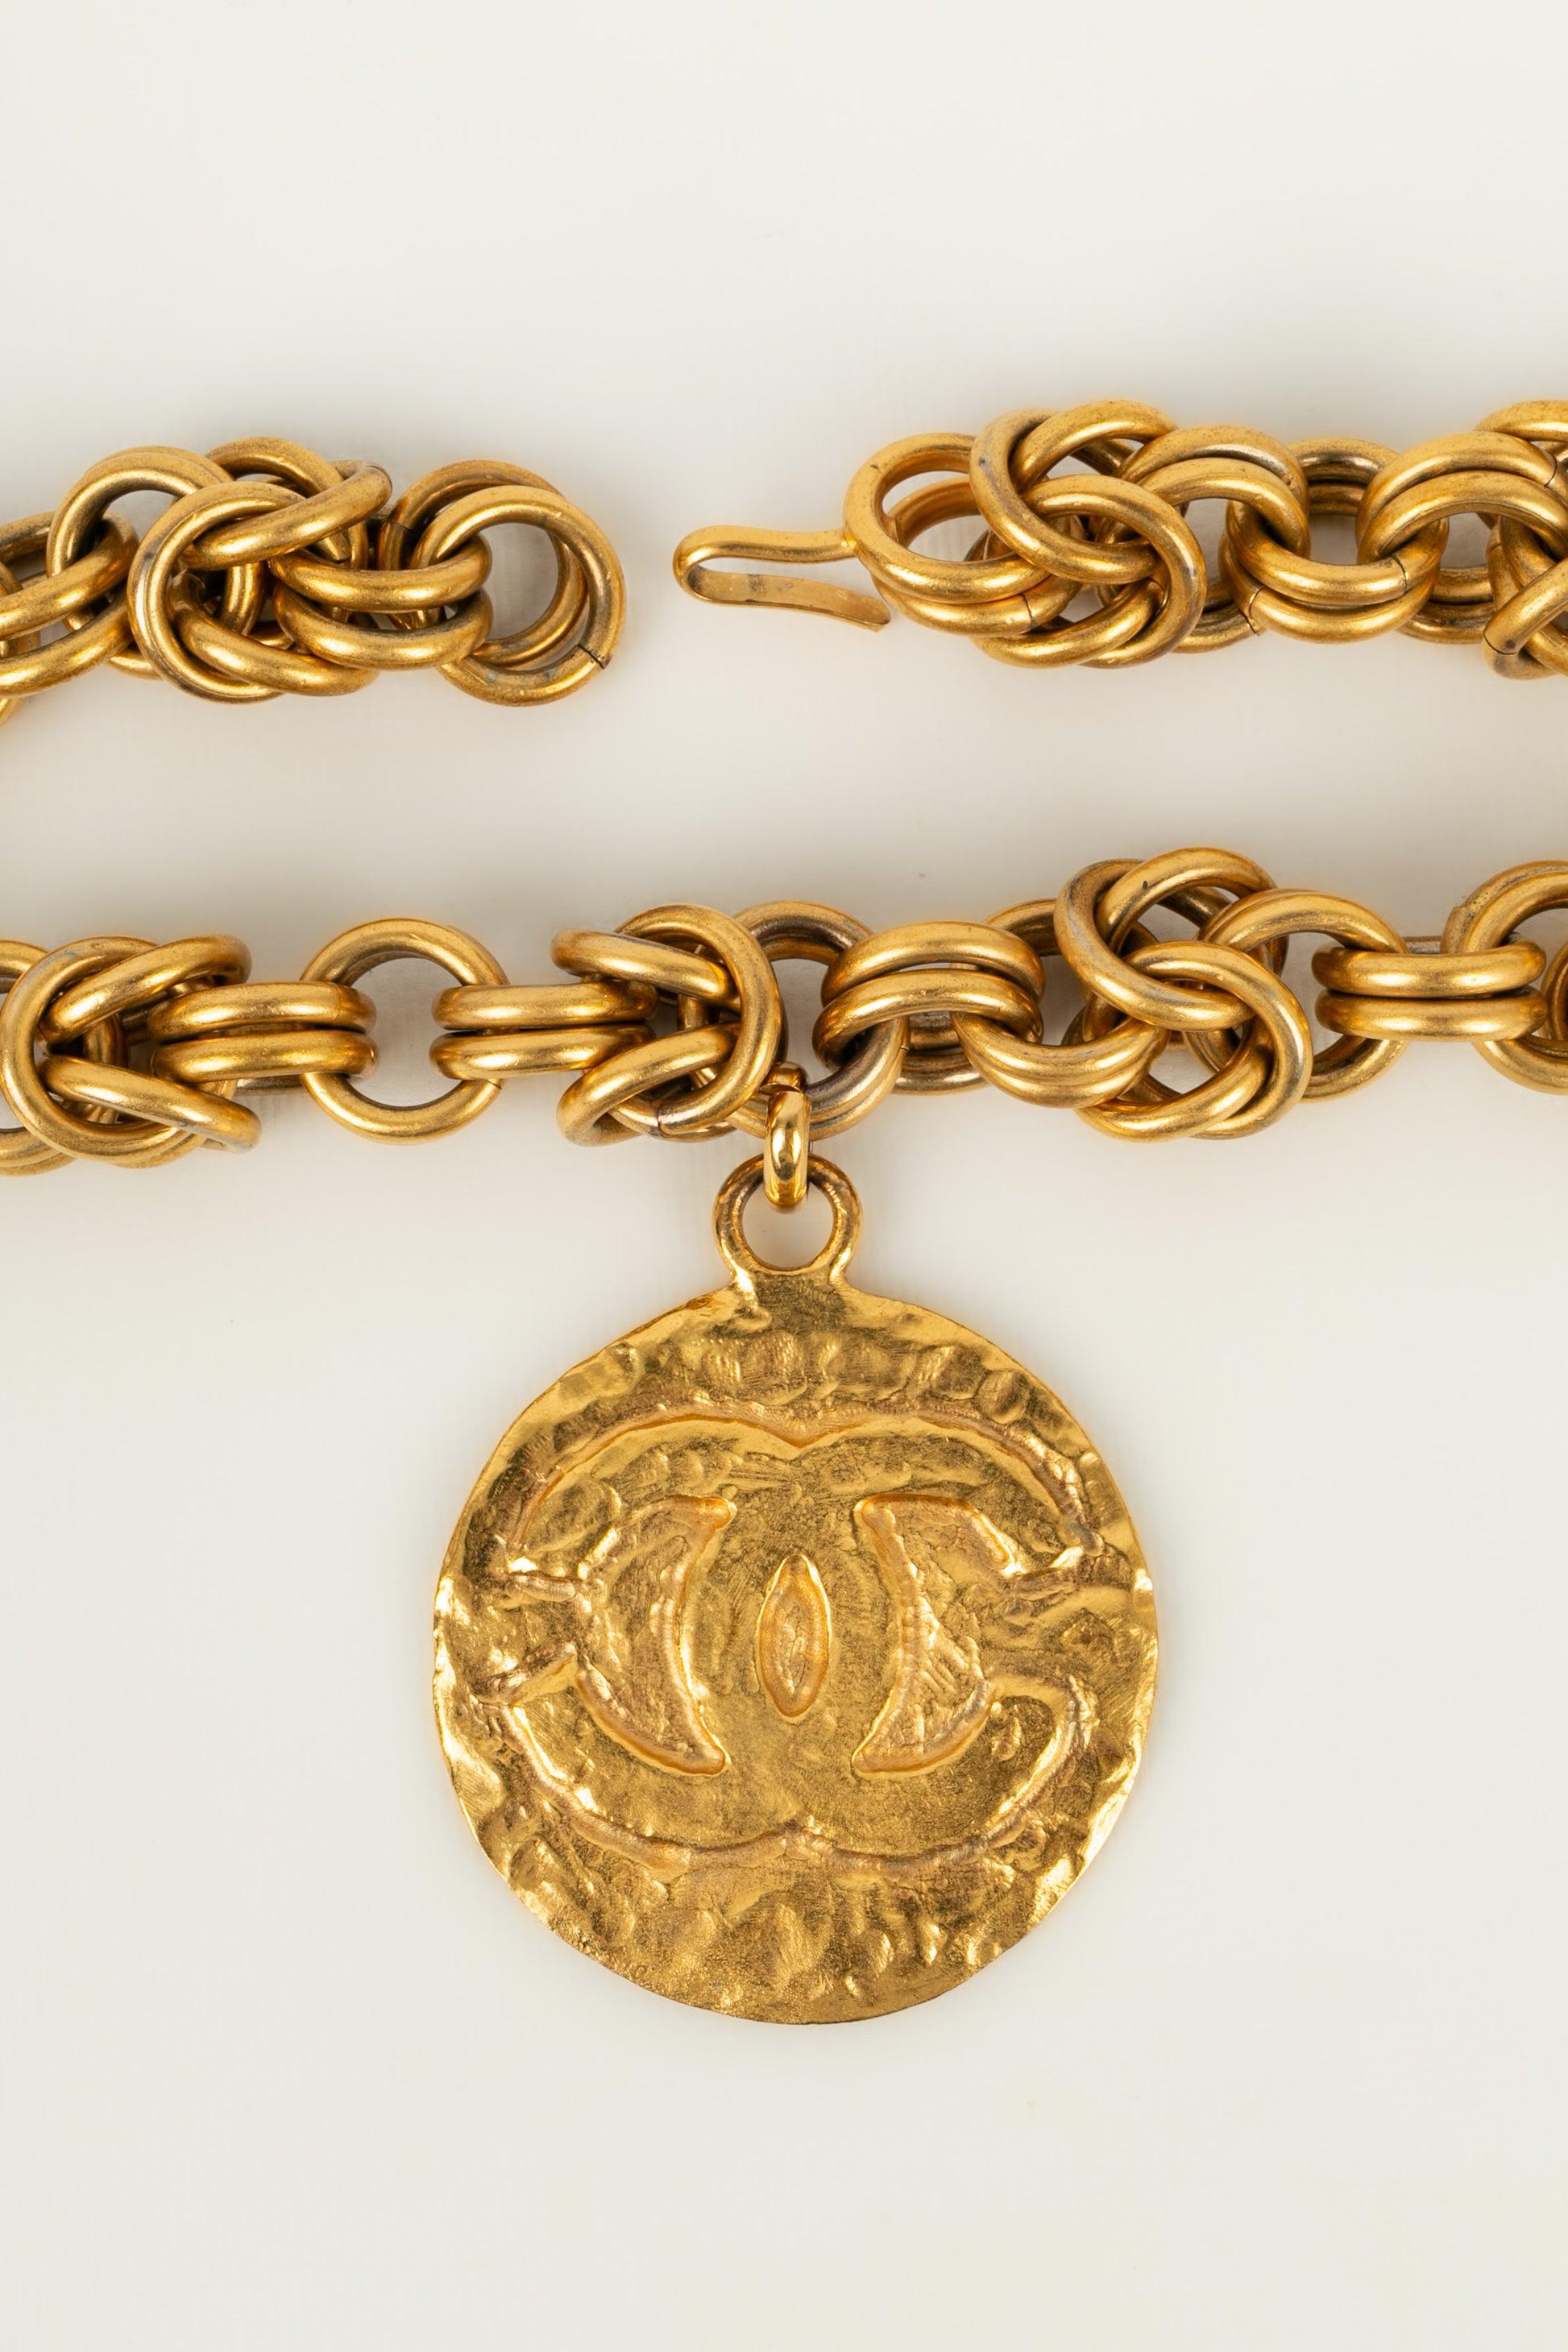 Chanel (Made in France) Impressionnant collier Haute Couture en métal doré avec un pendentif cc. Non signée.

Informations supplémentaires :
Condit : Très bon état.
Dimensions : Longueur : 79 cm

Référence du vendeur : CB29